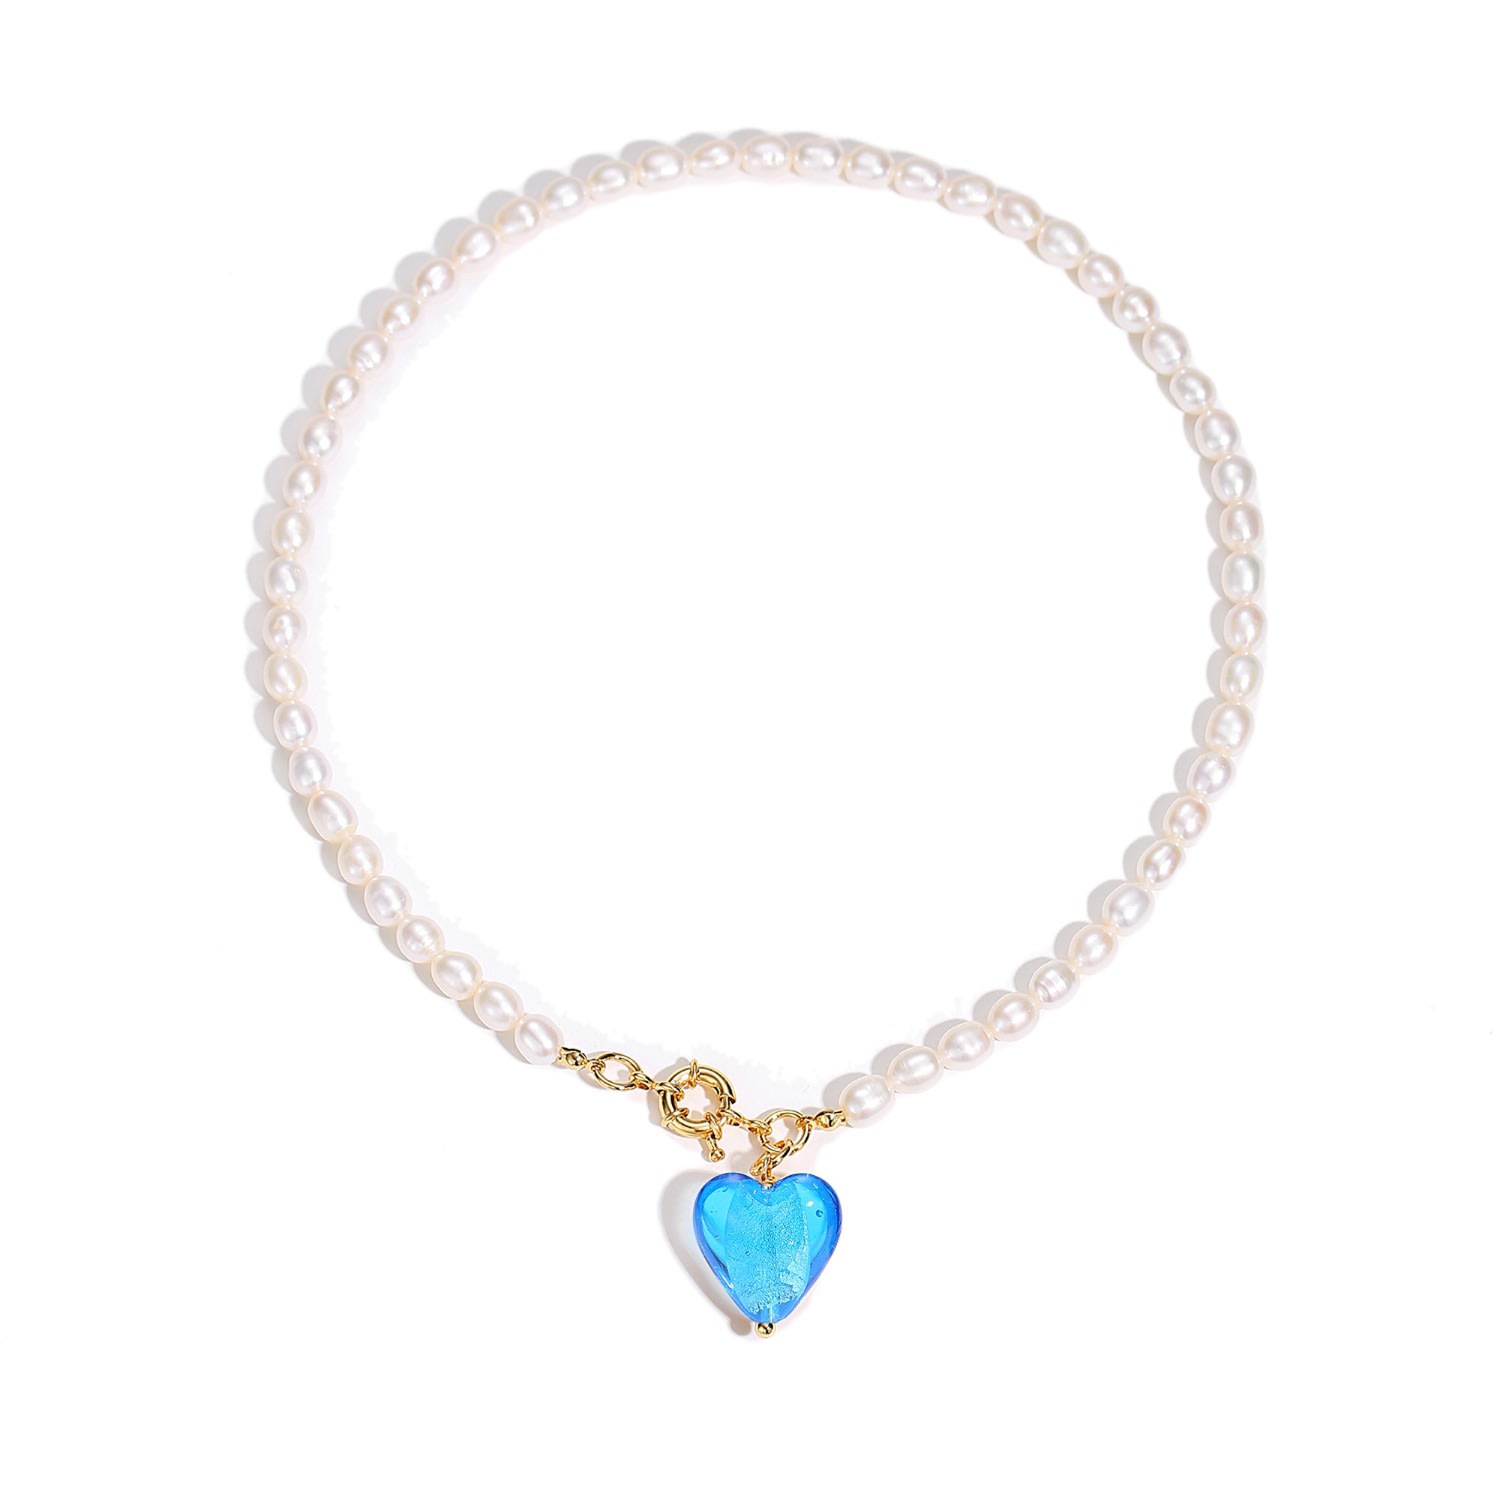 Shop Classicharms Women's Esmée Sky Blue Glaze Heart Pendant Pearl Necklace